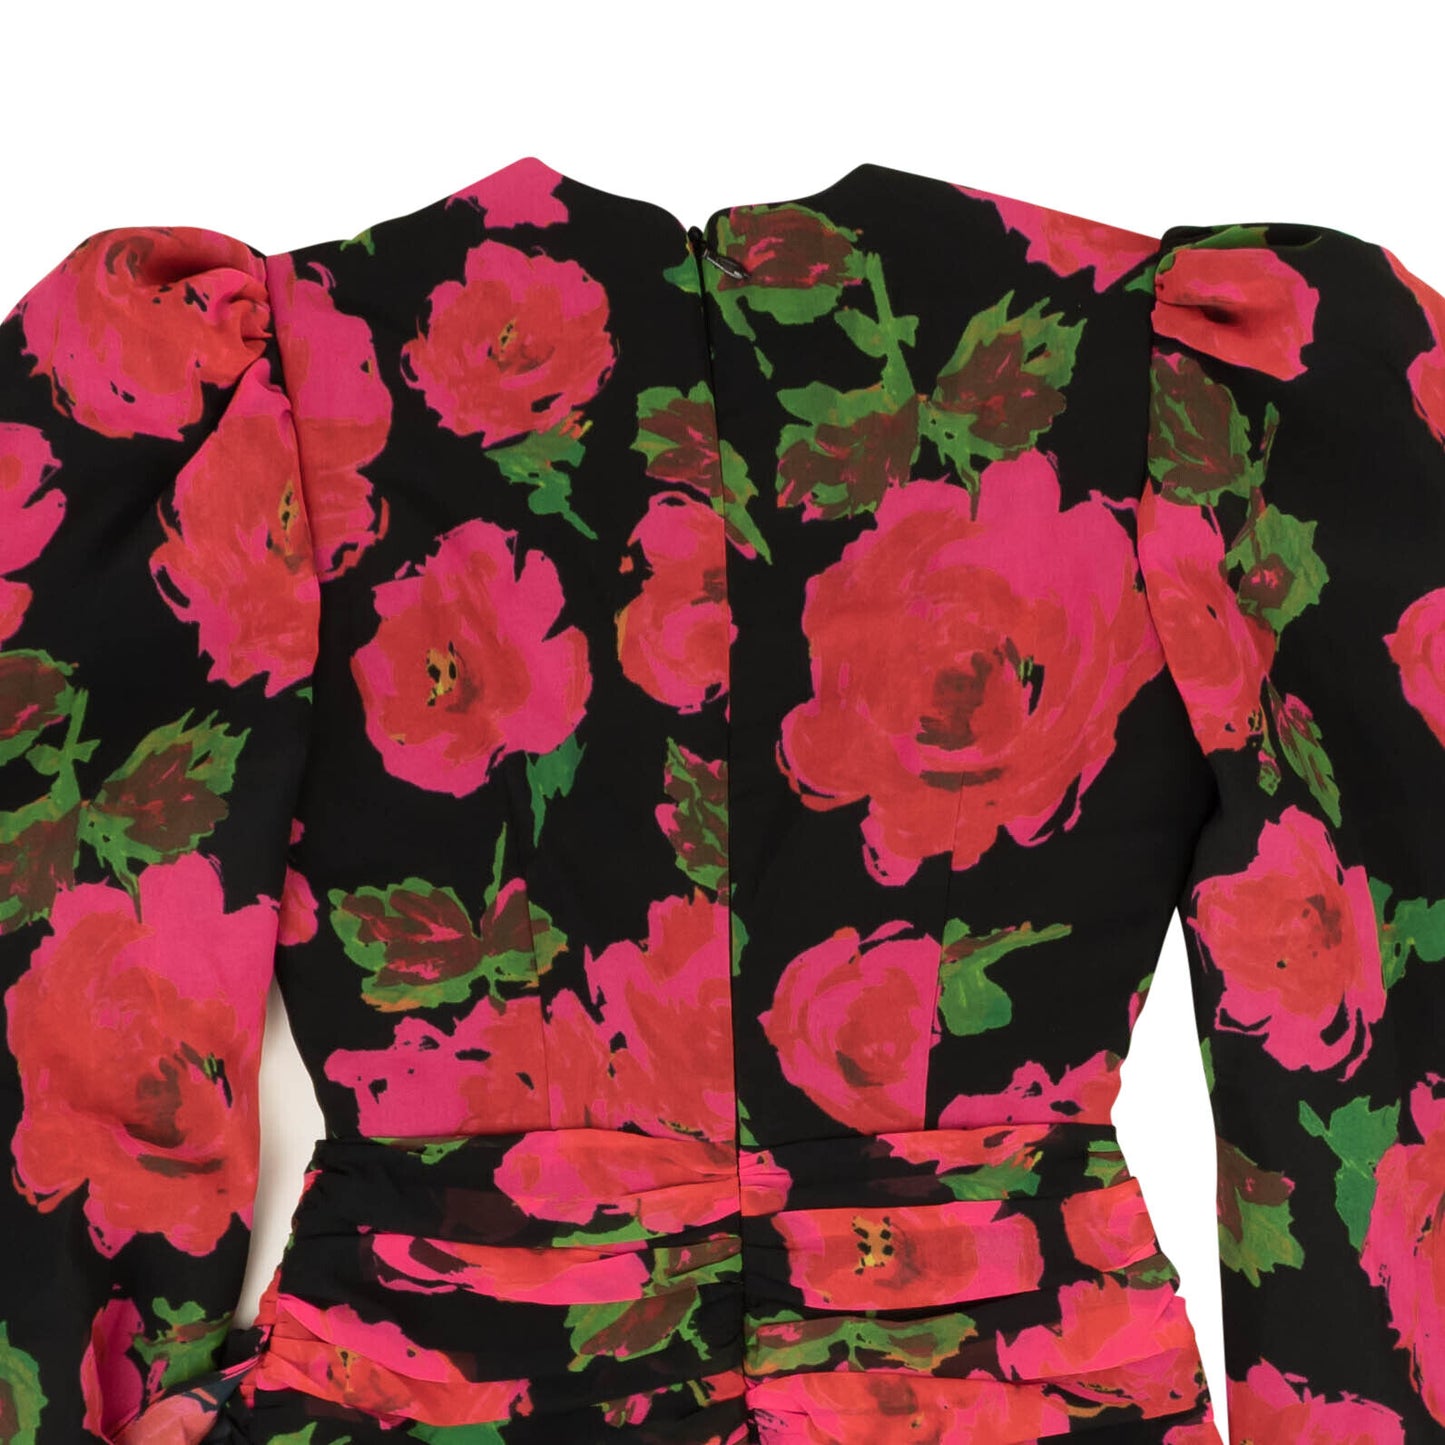 Richard Quinn Rara Floral Dress - Fuchsia Pink